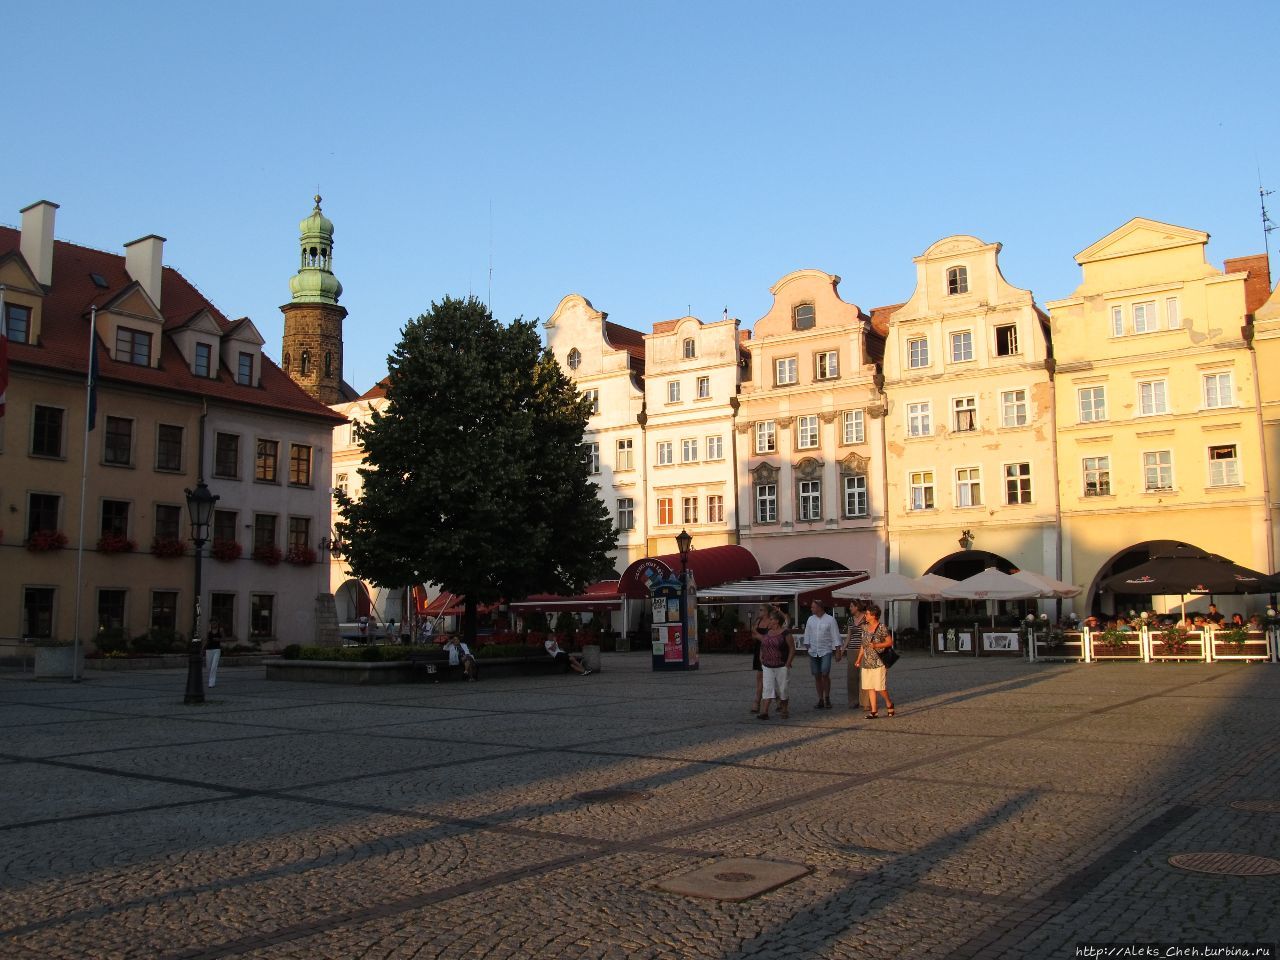 Рыночная площадь Еленя-Гура, Польша